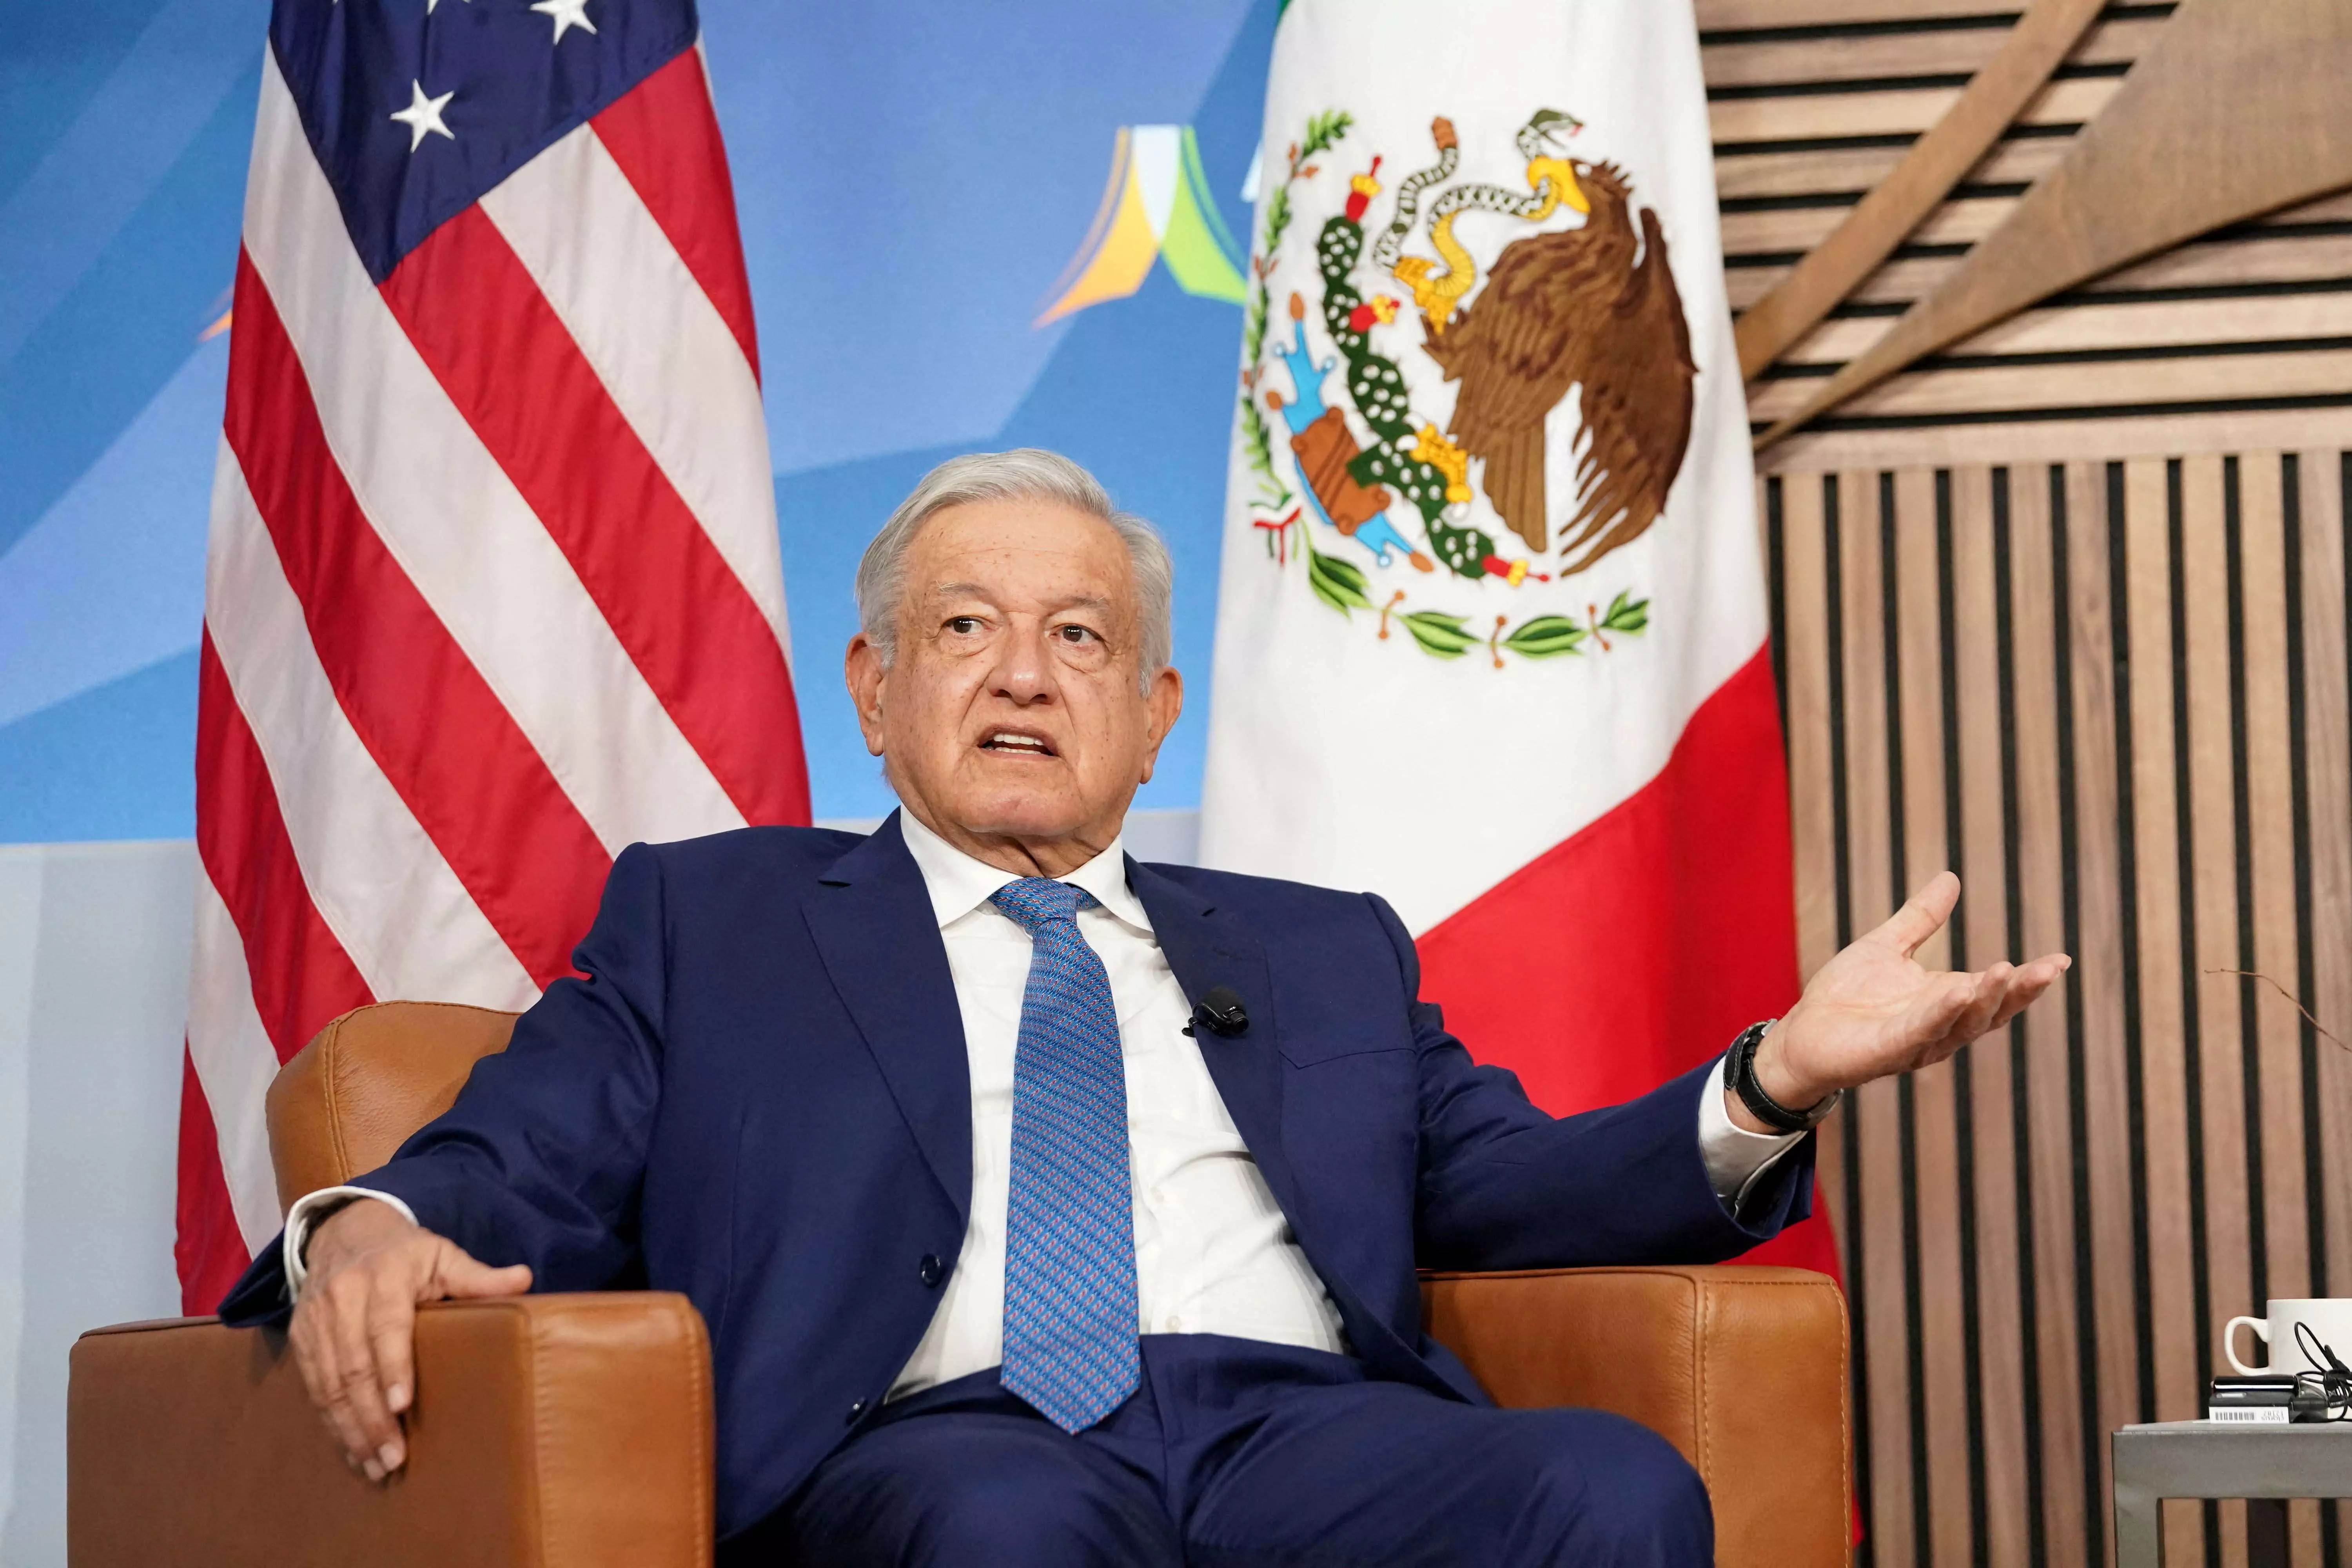 Mexican राष्ट्रपति ने अमेरिका में बंदूक नियंत्रण बढ़ाने का किया आग्रह